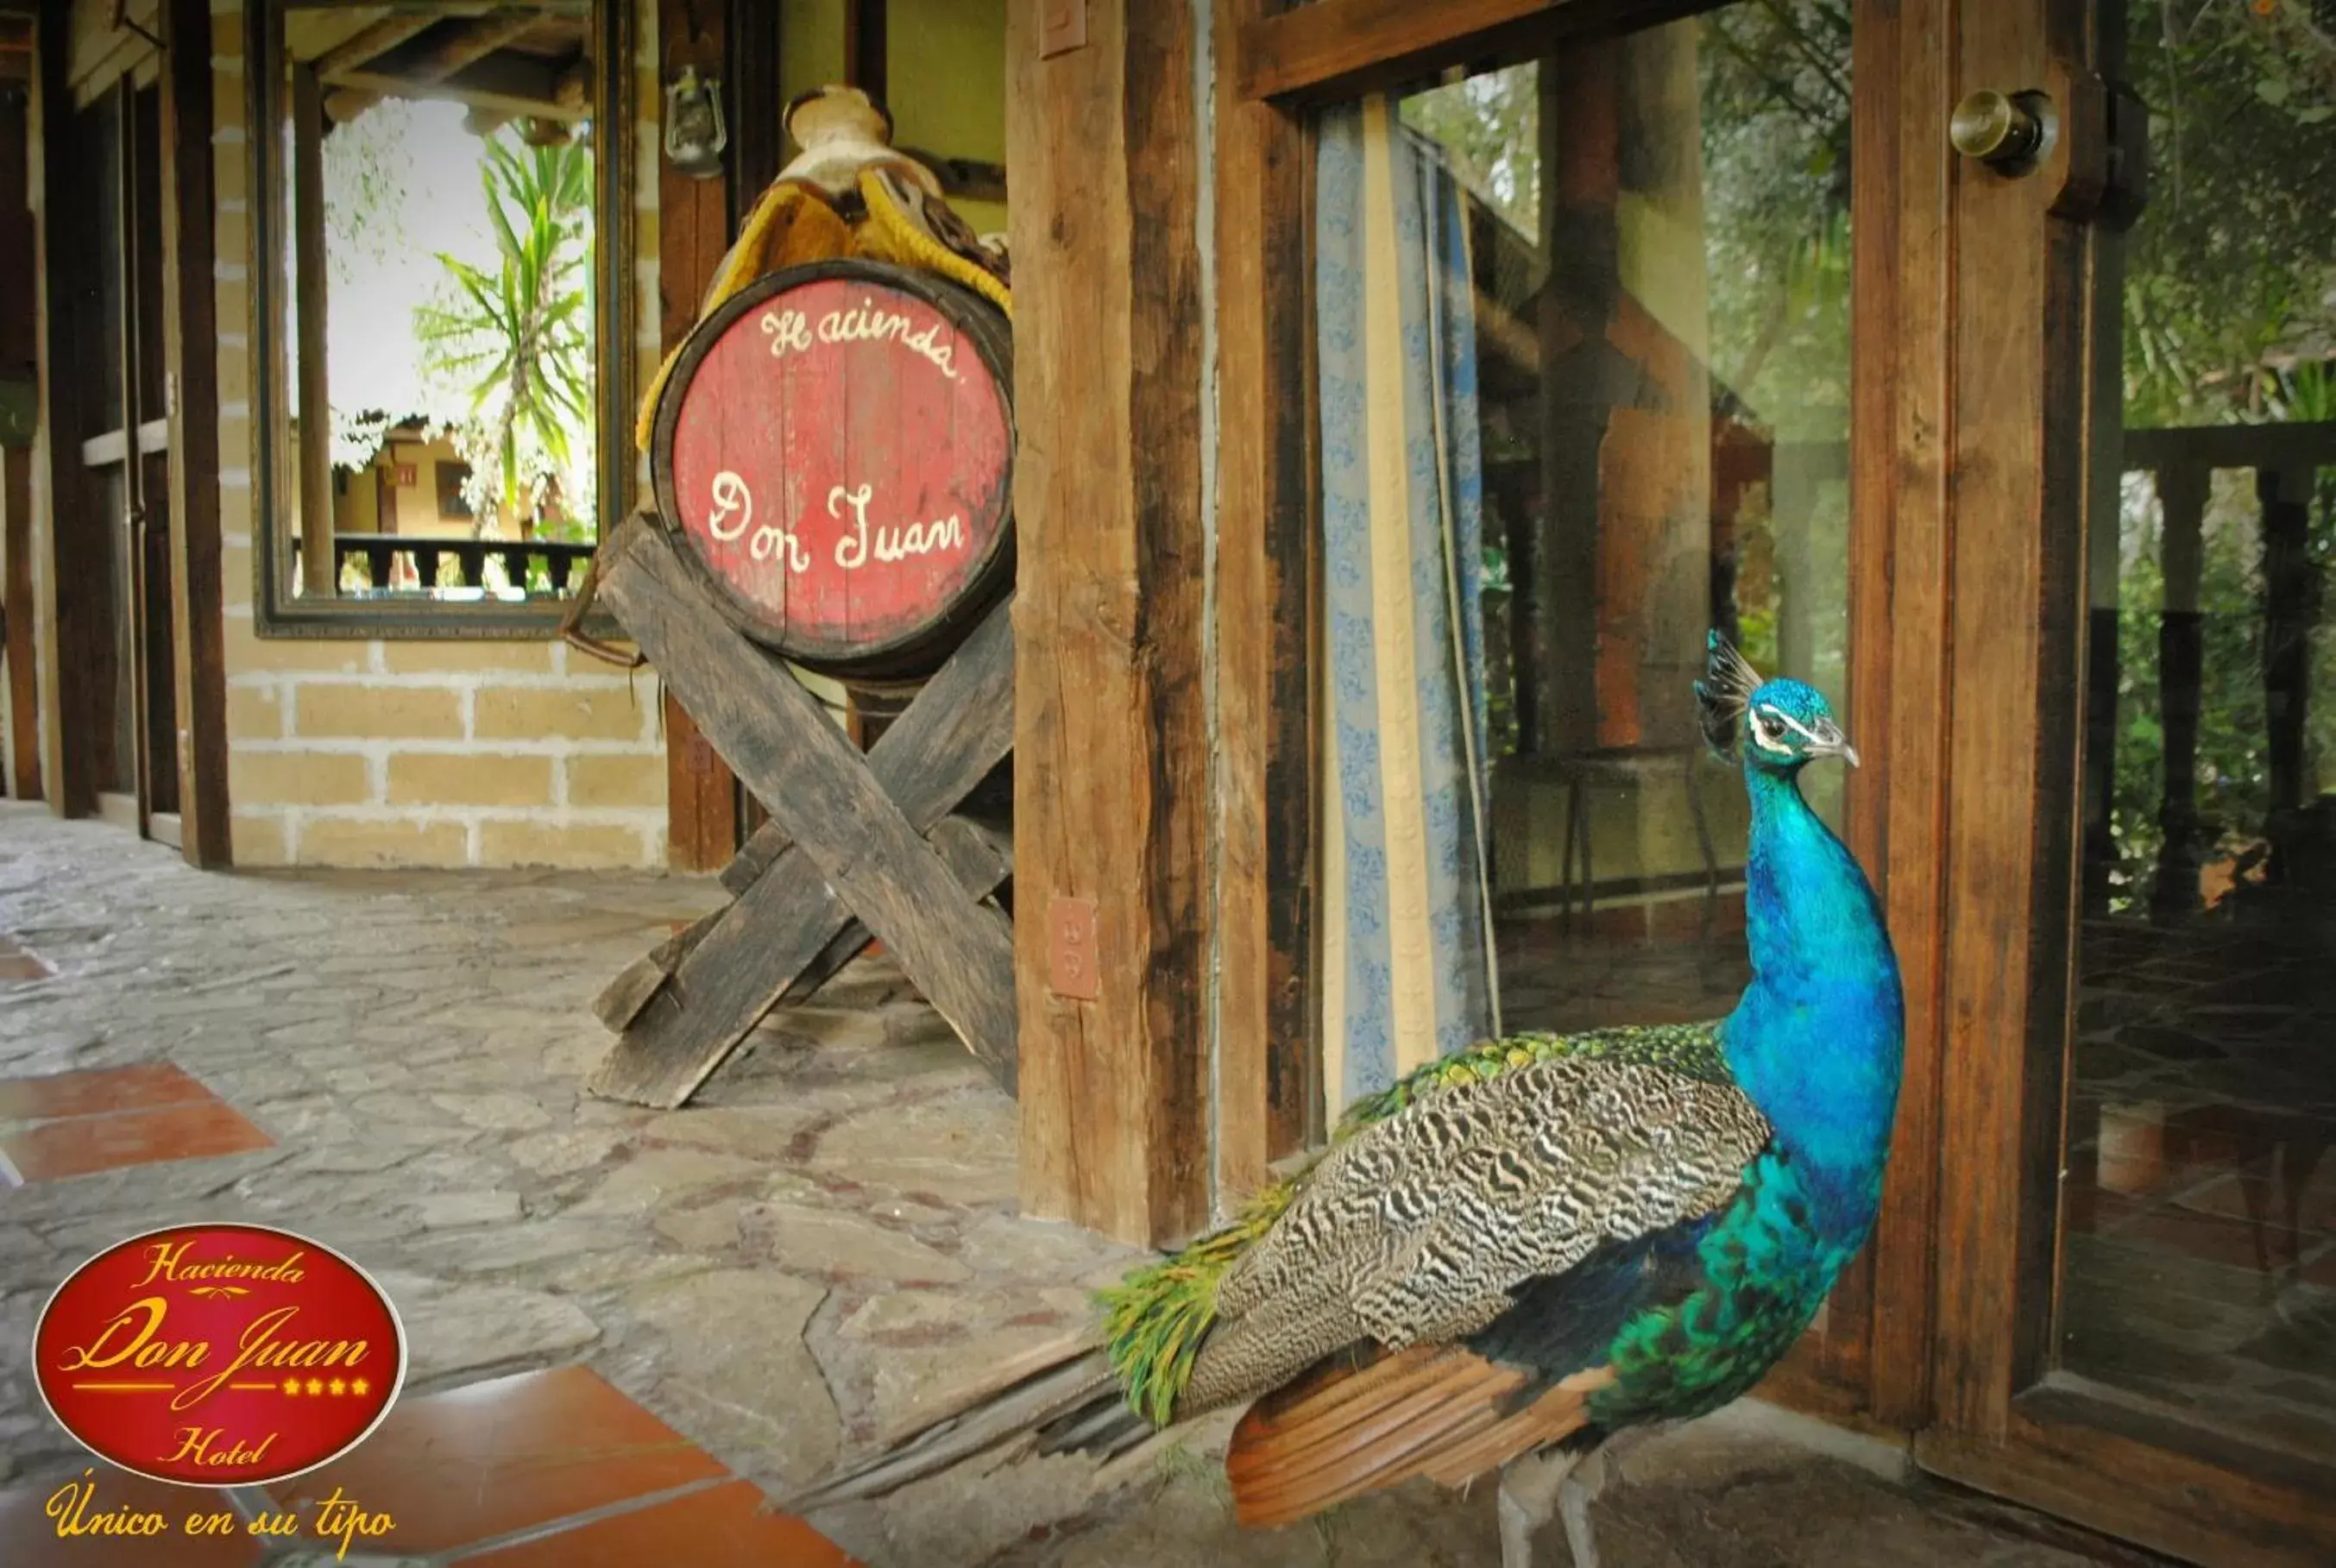 On site, Other Animals in Hotel Hacienda Don Juan San Cristobal de las Casas Chiapas